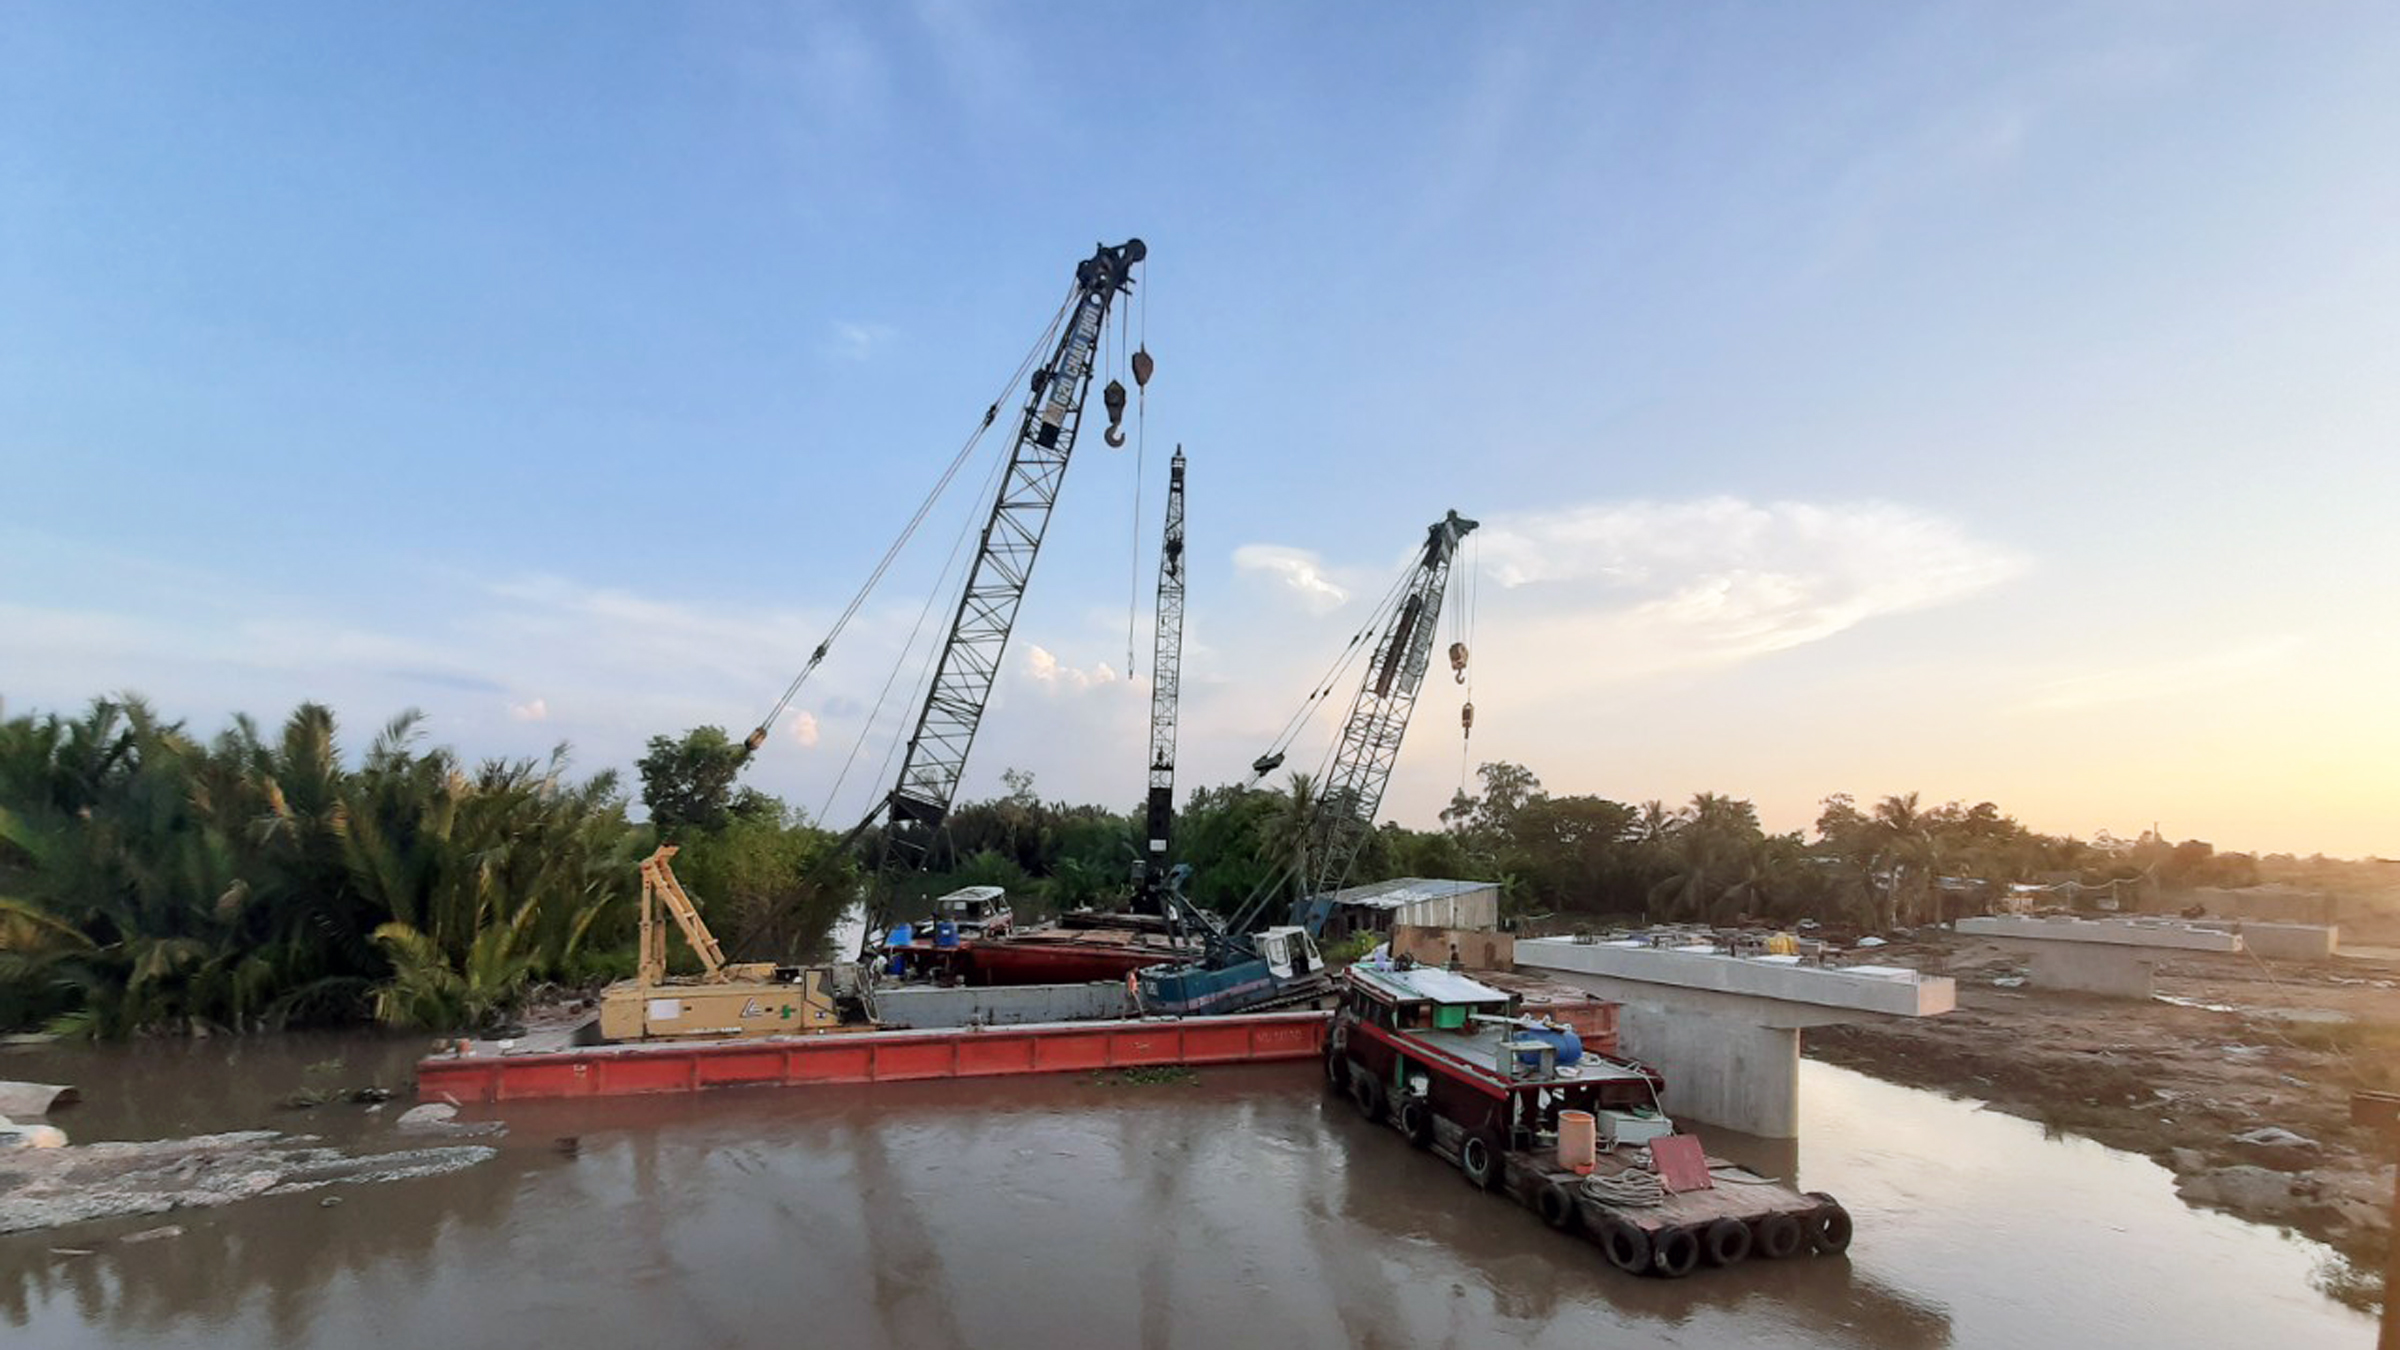 Cầu Sông Đình - thuộc dự án xây dựng trục phát triển kinh tế trọng điểm tôm, lúa tỉnh Sóc Trăng.